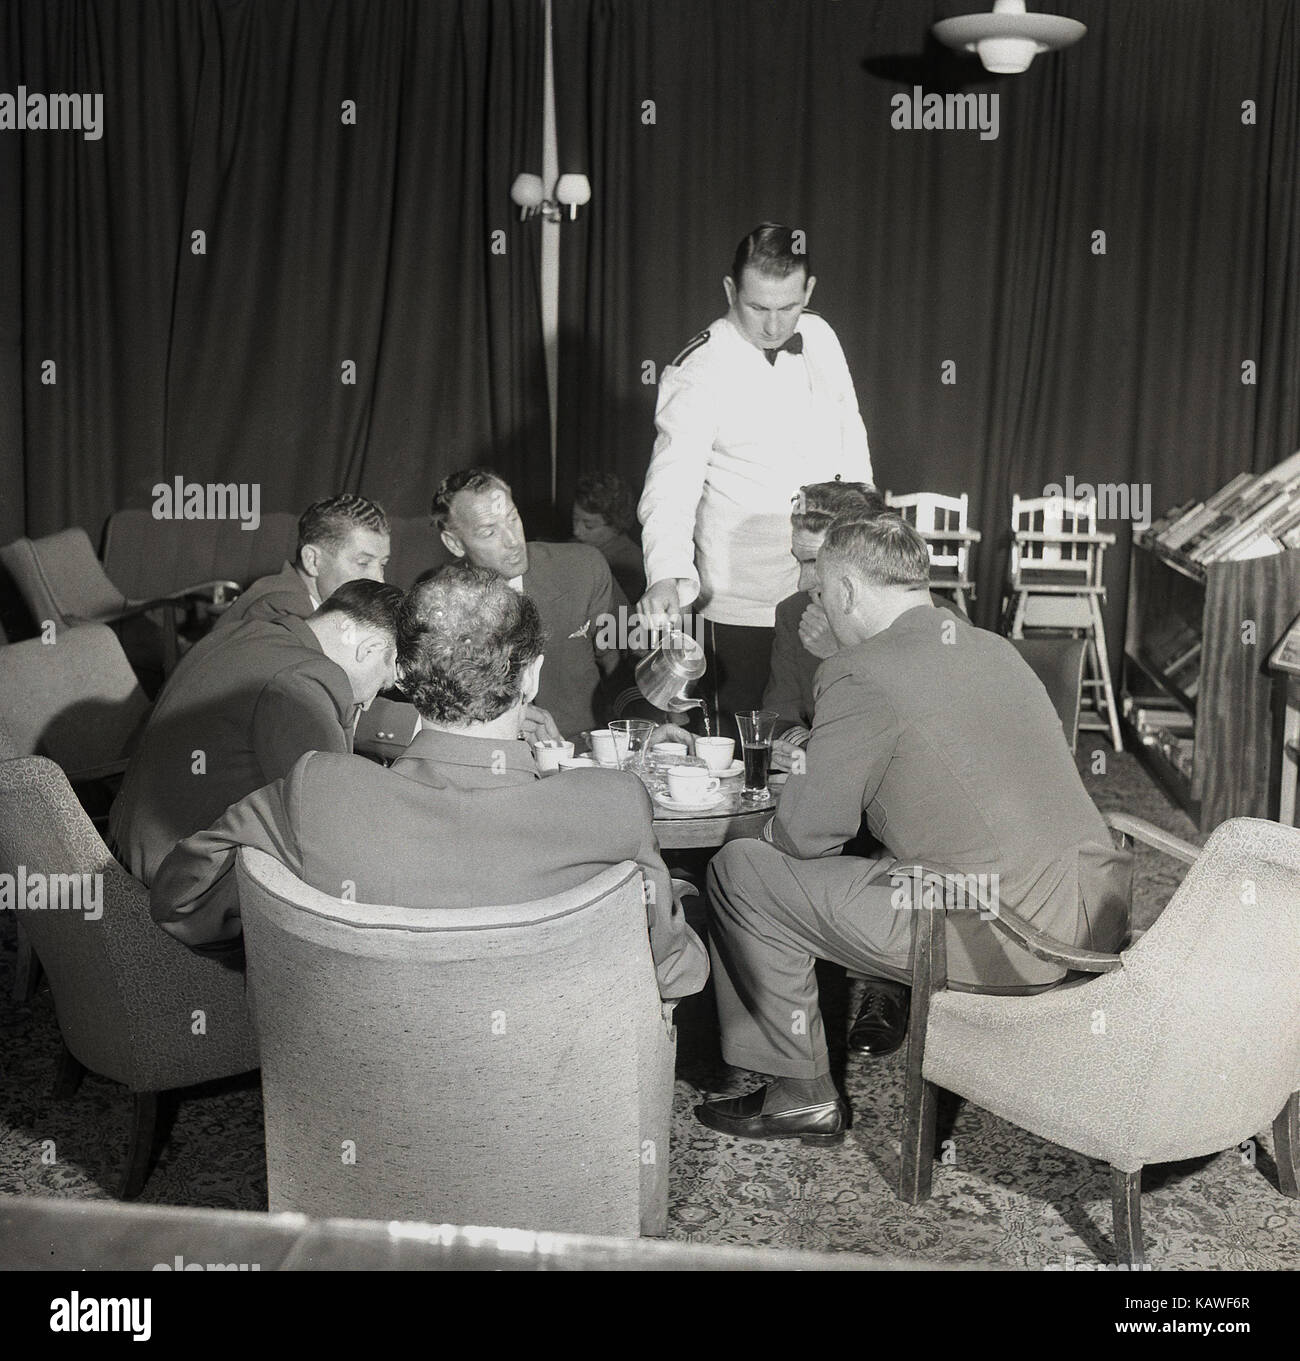 1950, historische, männlichen Piloten und Crew zusammen sitzen in einer Flughafen-lounge vor einem Flug, der Kaffee von einer weiß beschichteten uniformierte Kellner, Dublin, Irland. Stockfoto